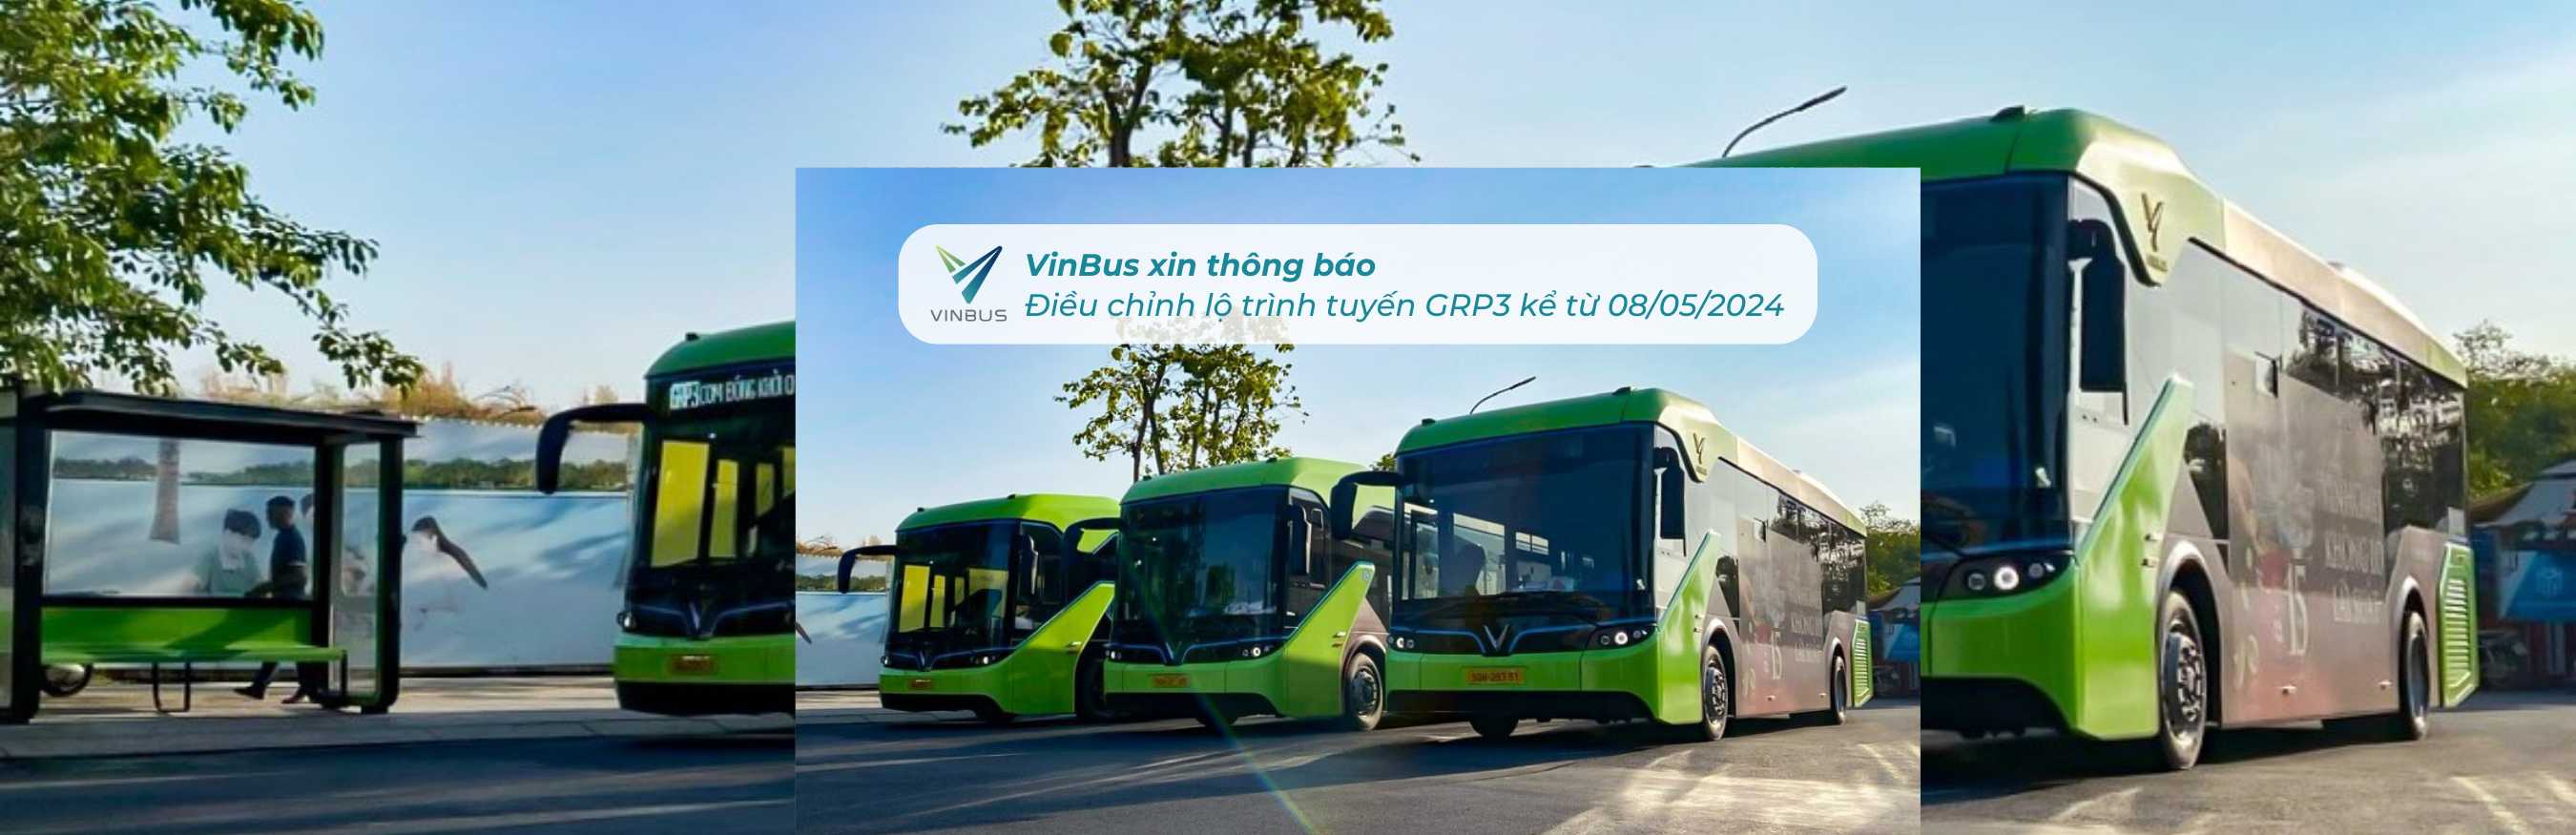 VinBus xin thông báo: Điều chỉnh lộ trình và điểm dừng tuyến GRP3 kể từ ngày 08/05/2024